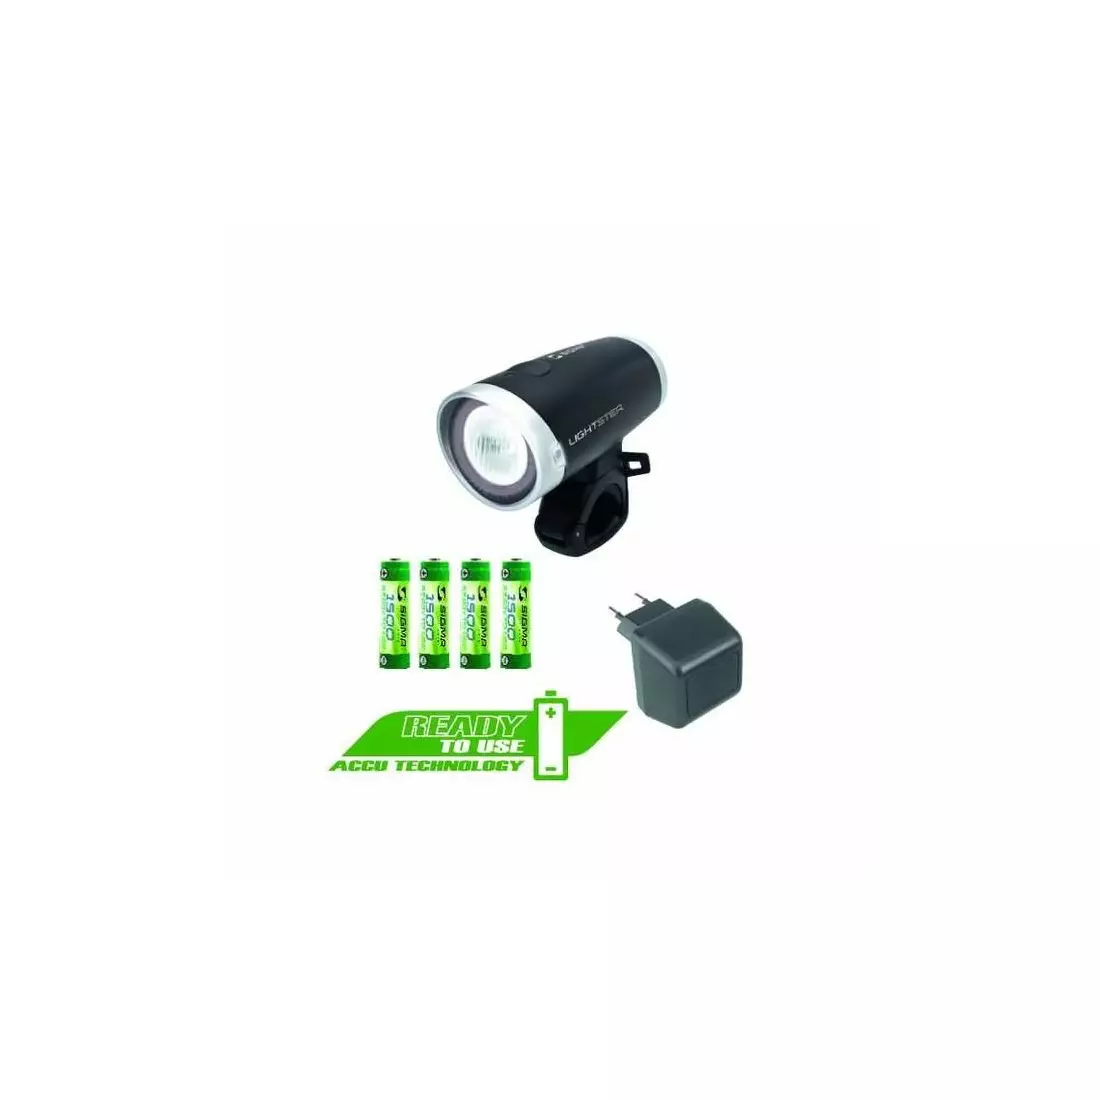 SIGMA SPORT - LIGHTSTER headlamp + charger - color: Black